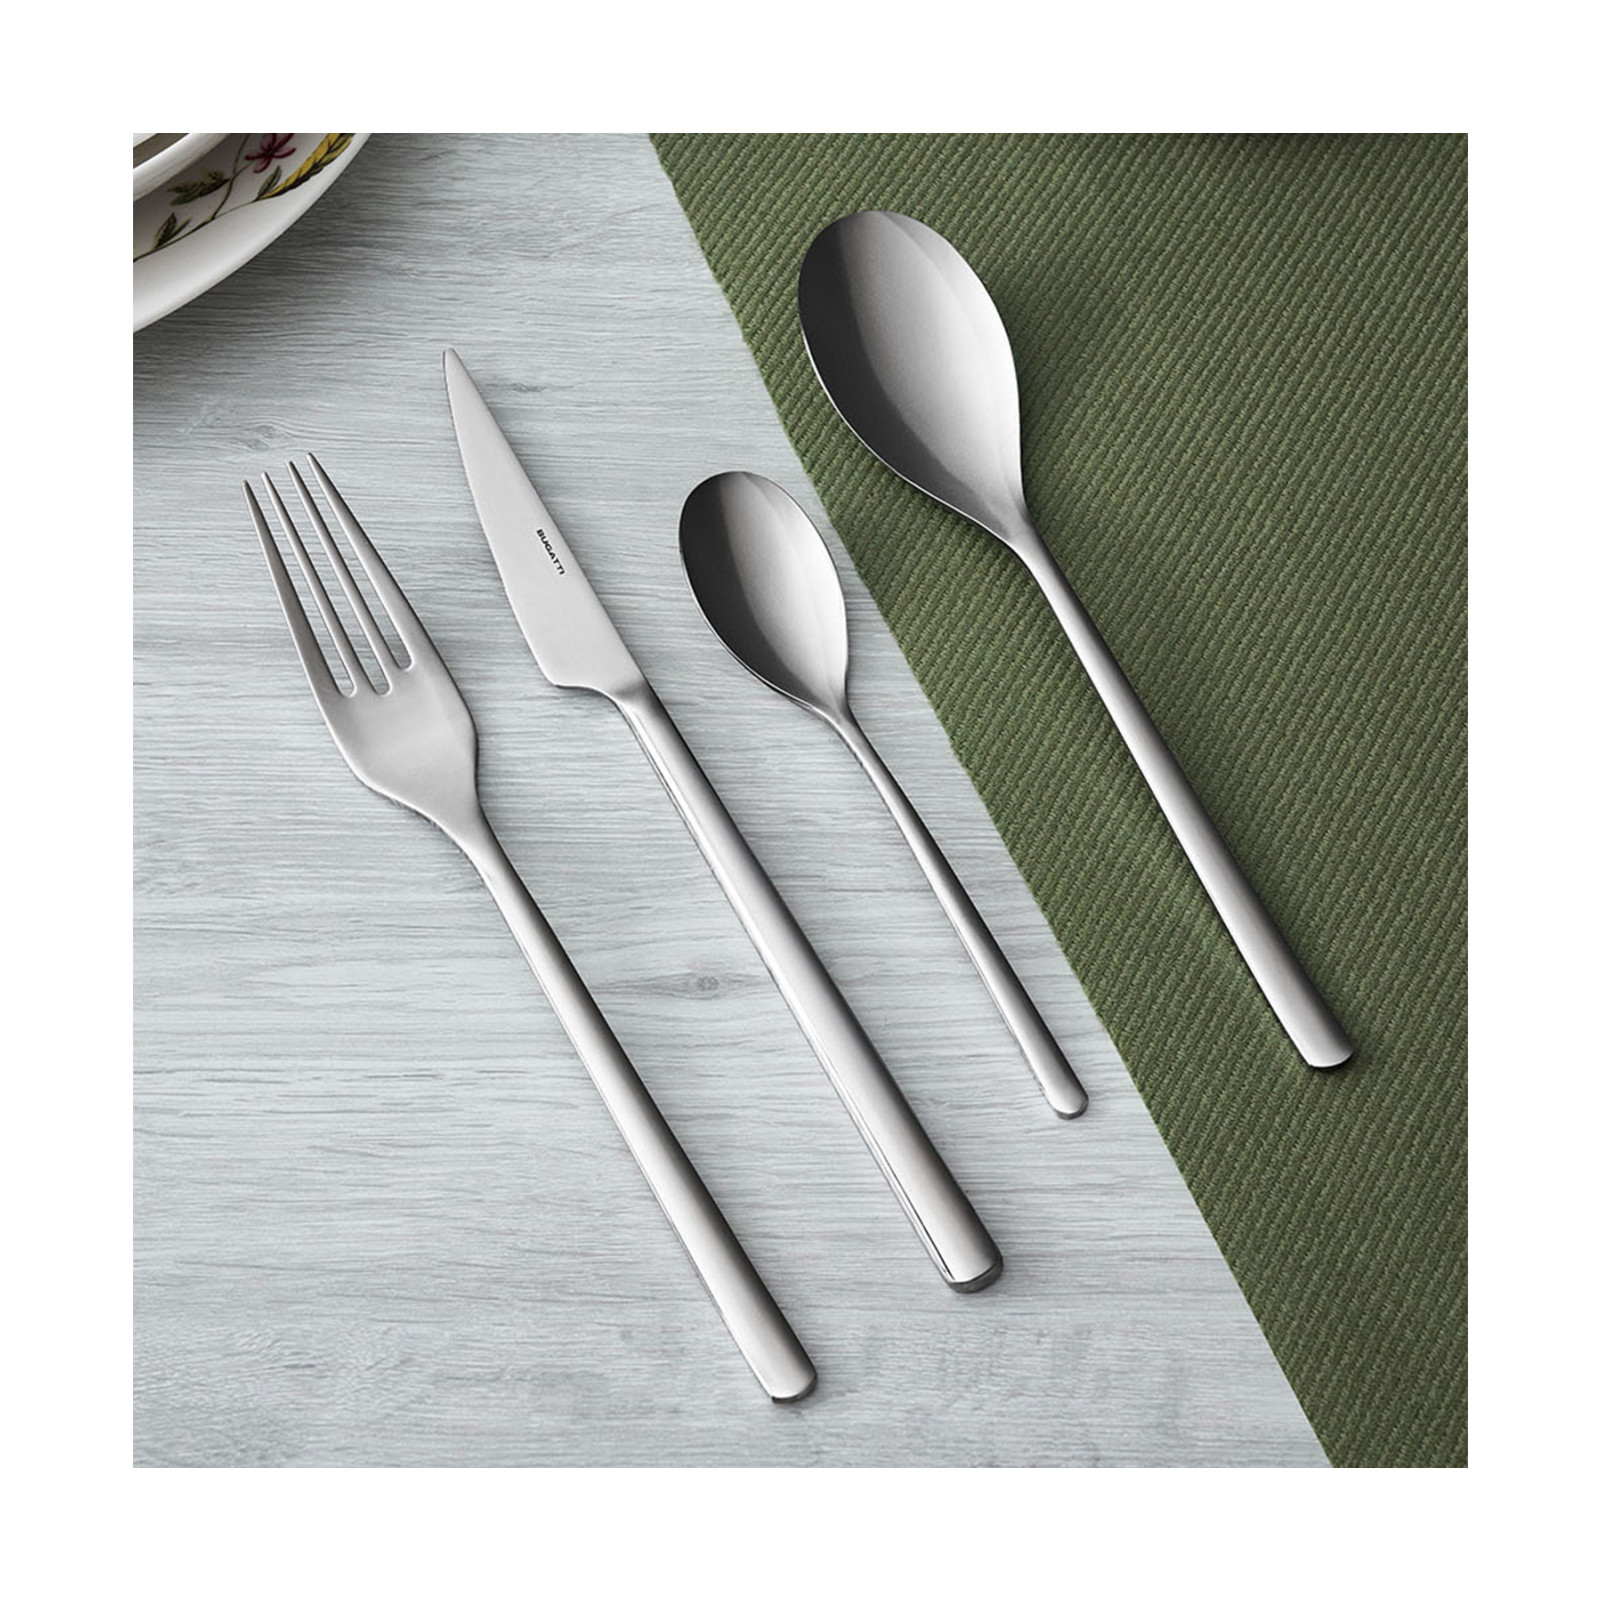 Bugatti - Designer cutlery, small home and appliances kitchen accessories